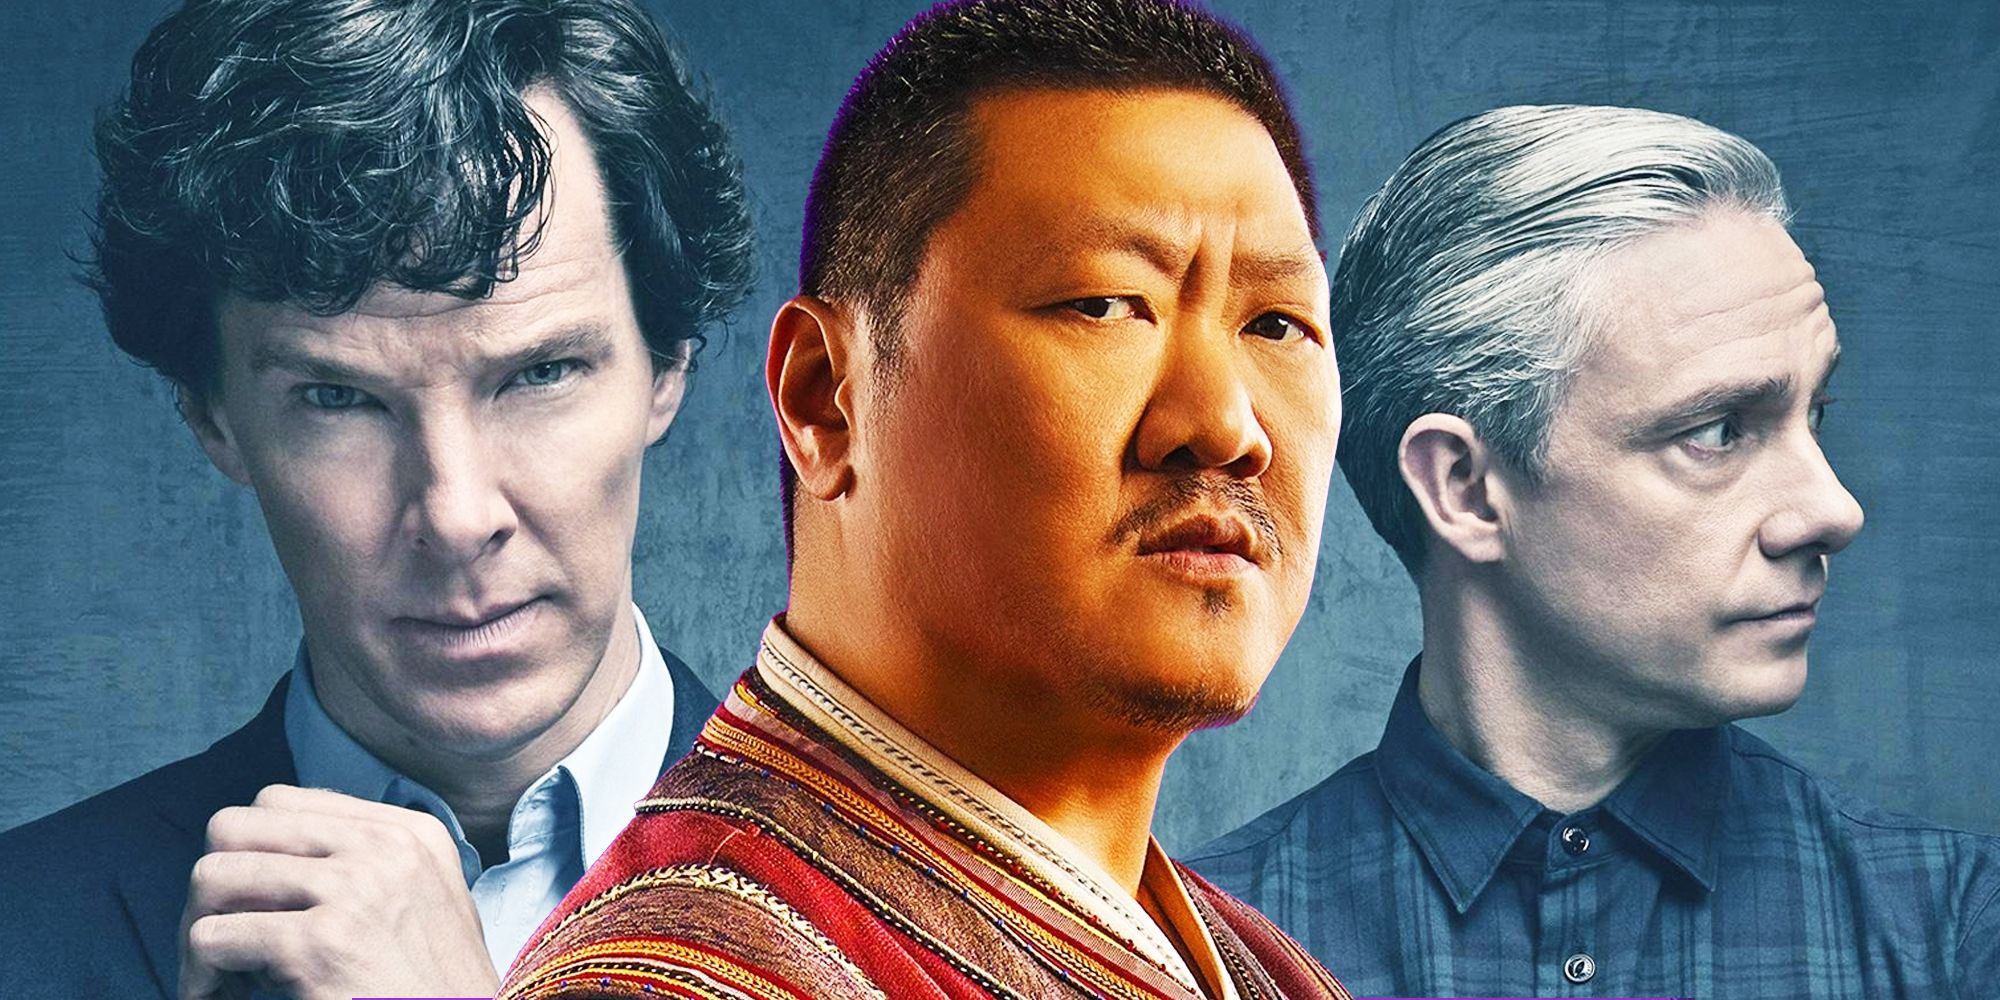 Wong, Sherlock, and Watson